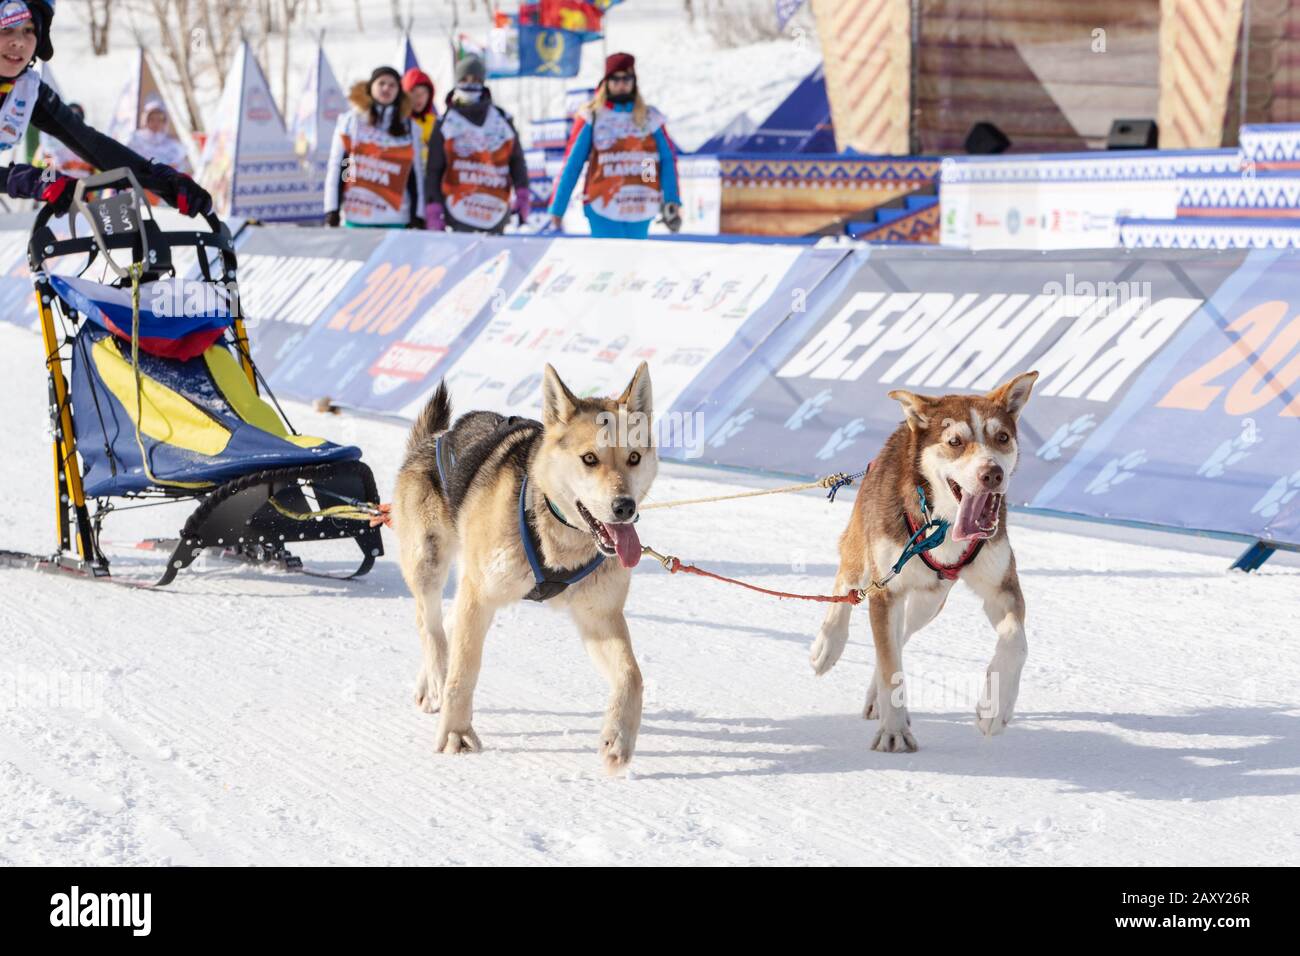 L'équipe de chiens de traîneau à chiens, qui s'exécute sur une distance de course enneigée pendant les concours pour enfants Kamchatka Sledge Dog Race Dyulin (Beringia). Ville De Petropavlovsk Banque D'Images